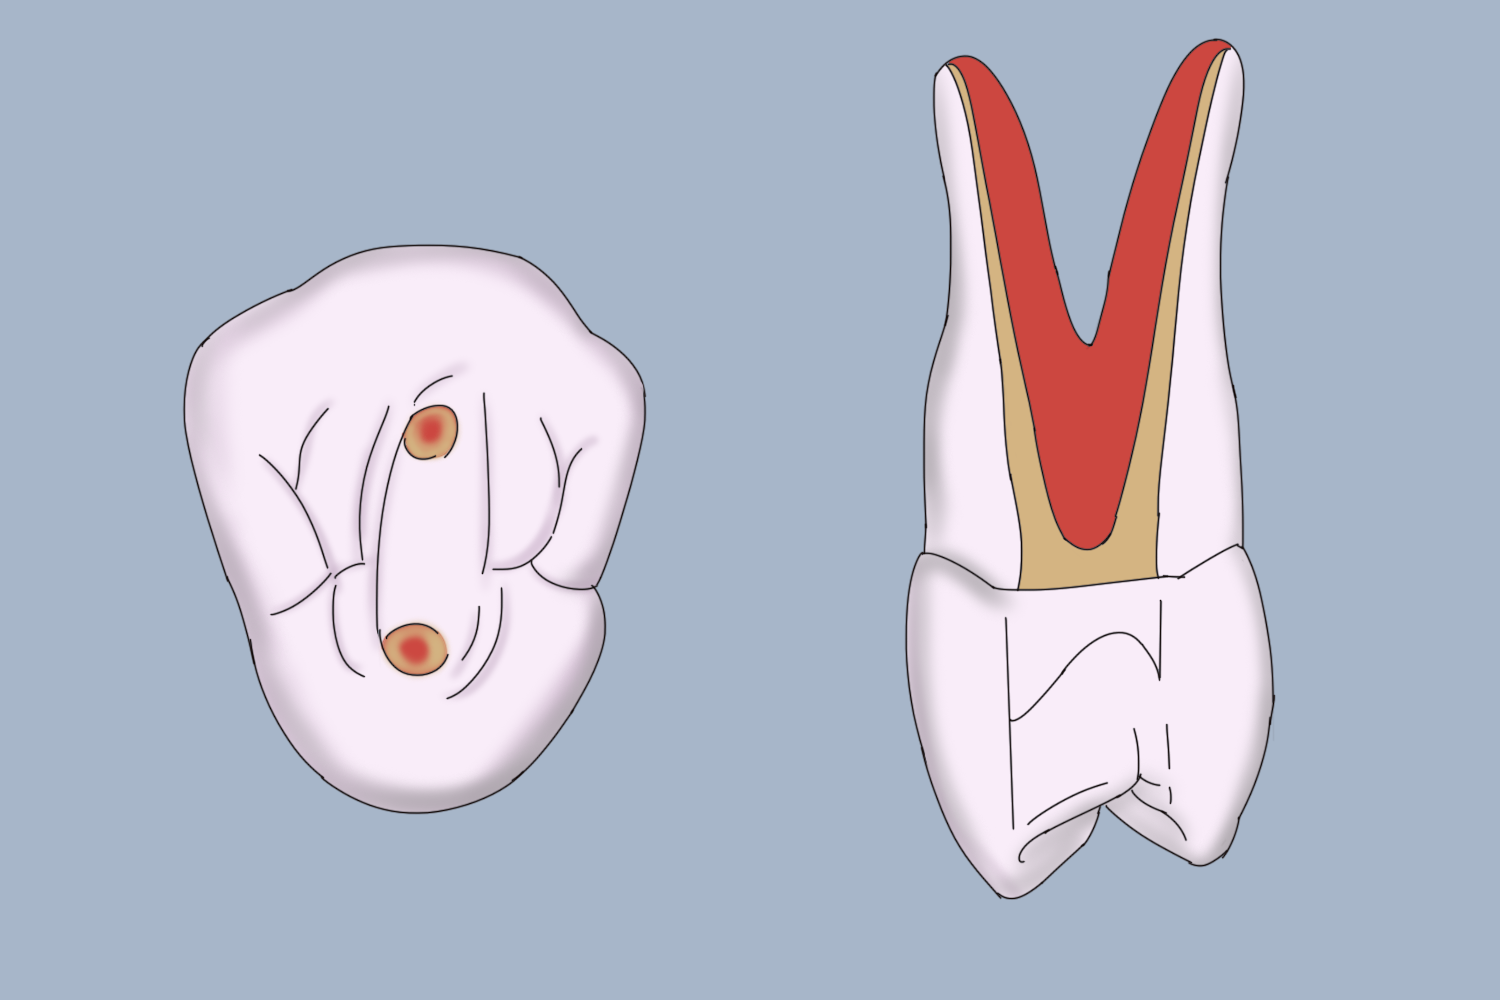 乳牙开髓位置3d图图片